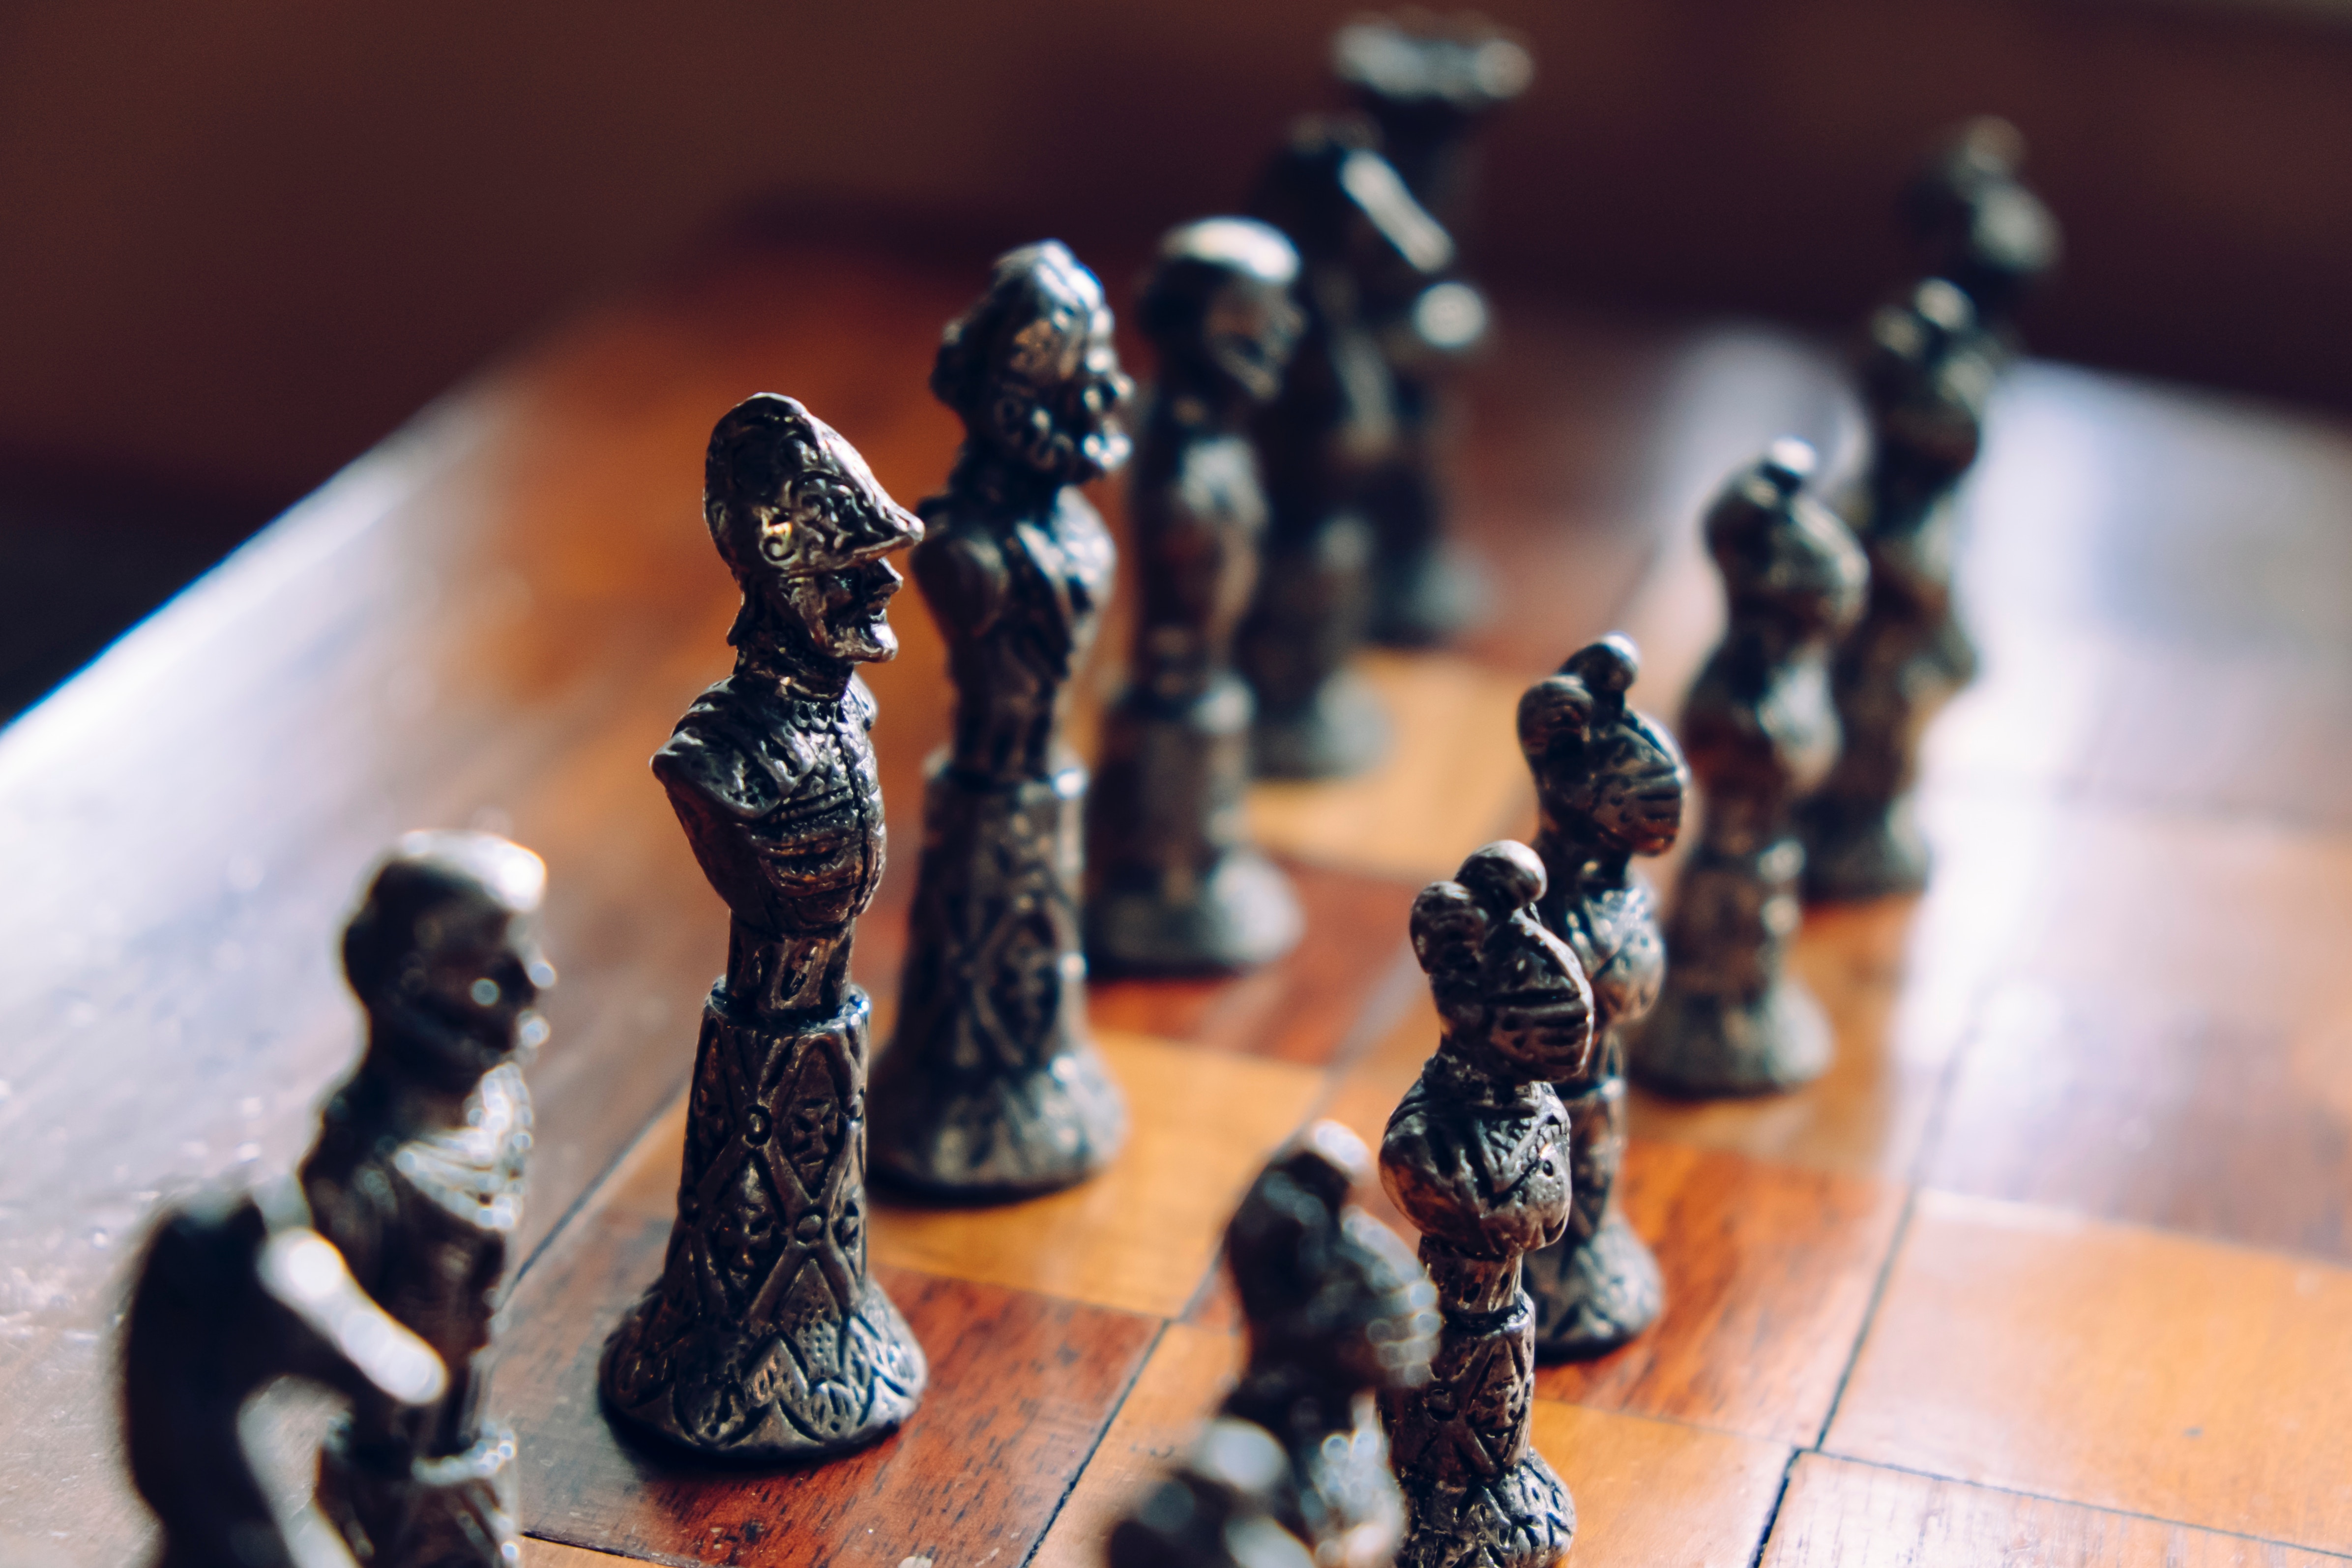 El ajedrez, un deporte que estimula la mente - BBVA Mi jubilación